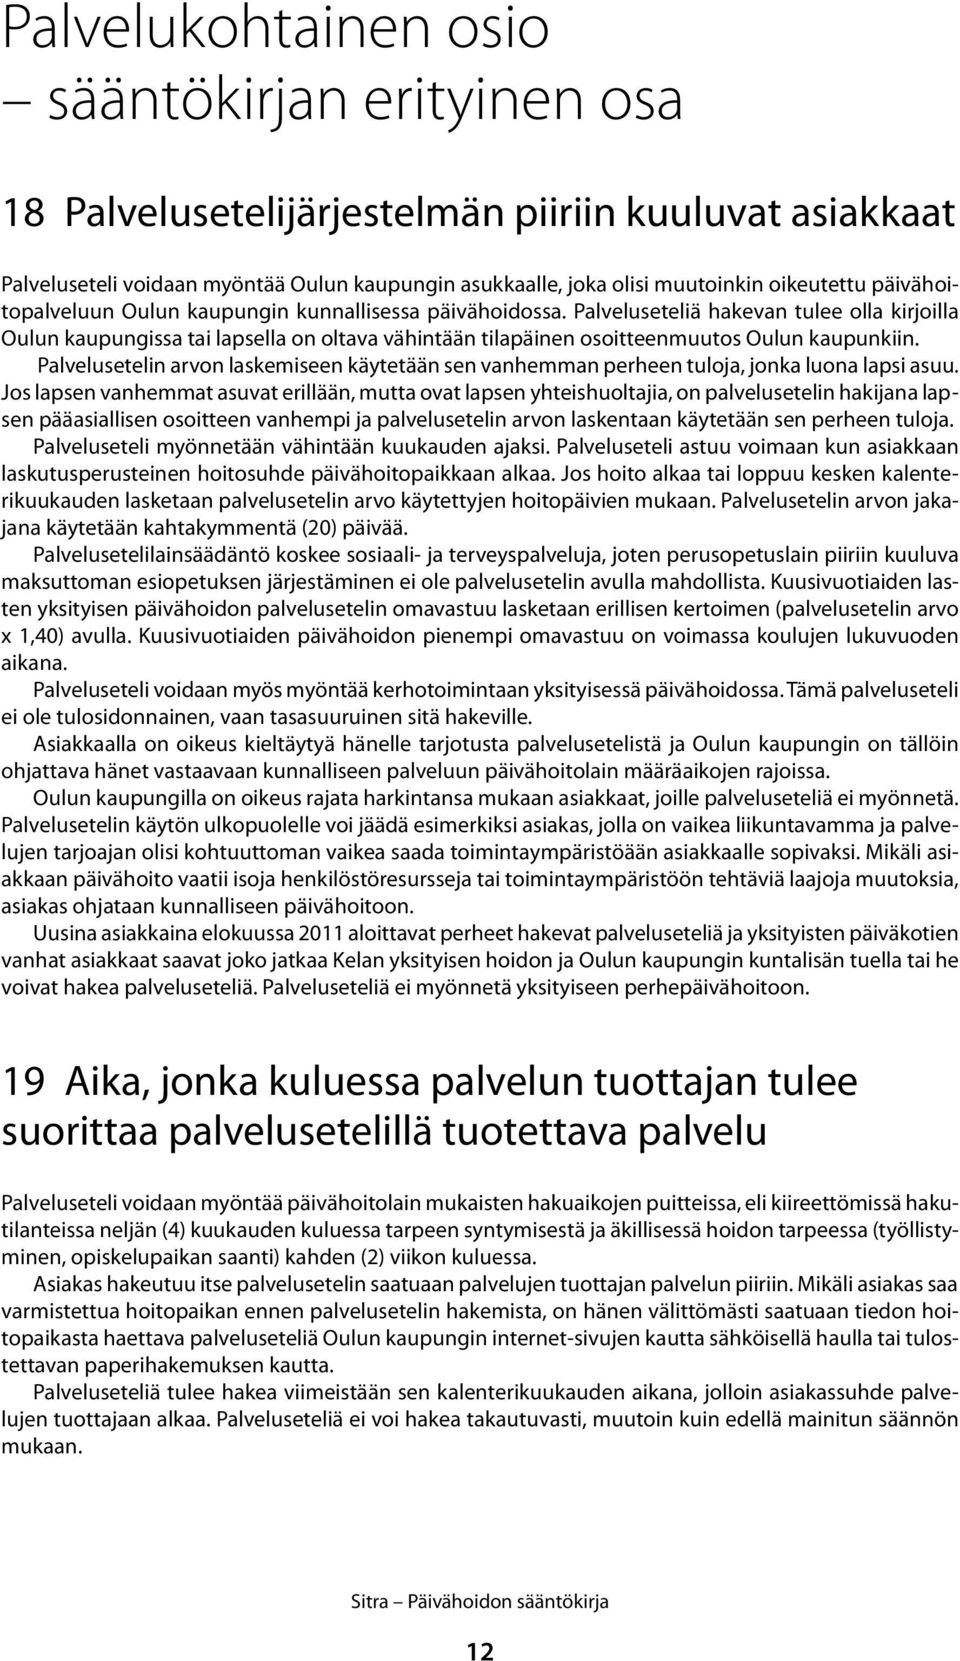 Palveluseteliä hakevan tulee olla kirjoilla Oulun kaupungissa tai lapsella on oltava vähintään tilapäinen osoitteenmuutos Oulun kaupunkiin.